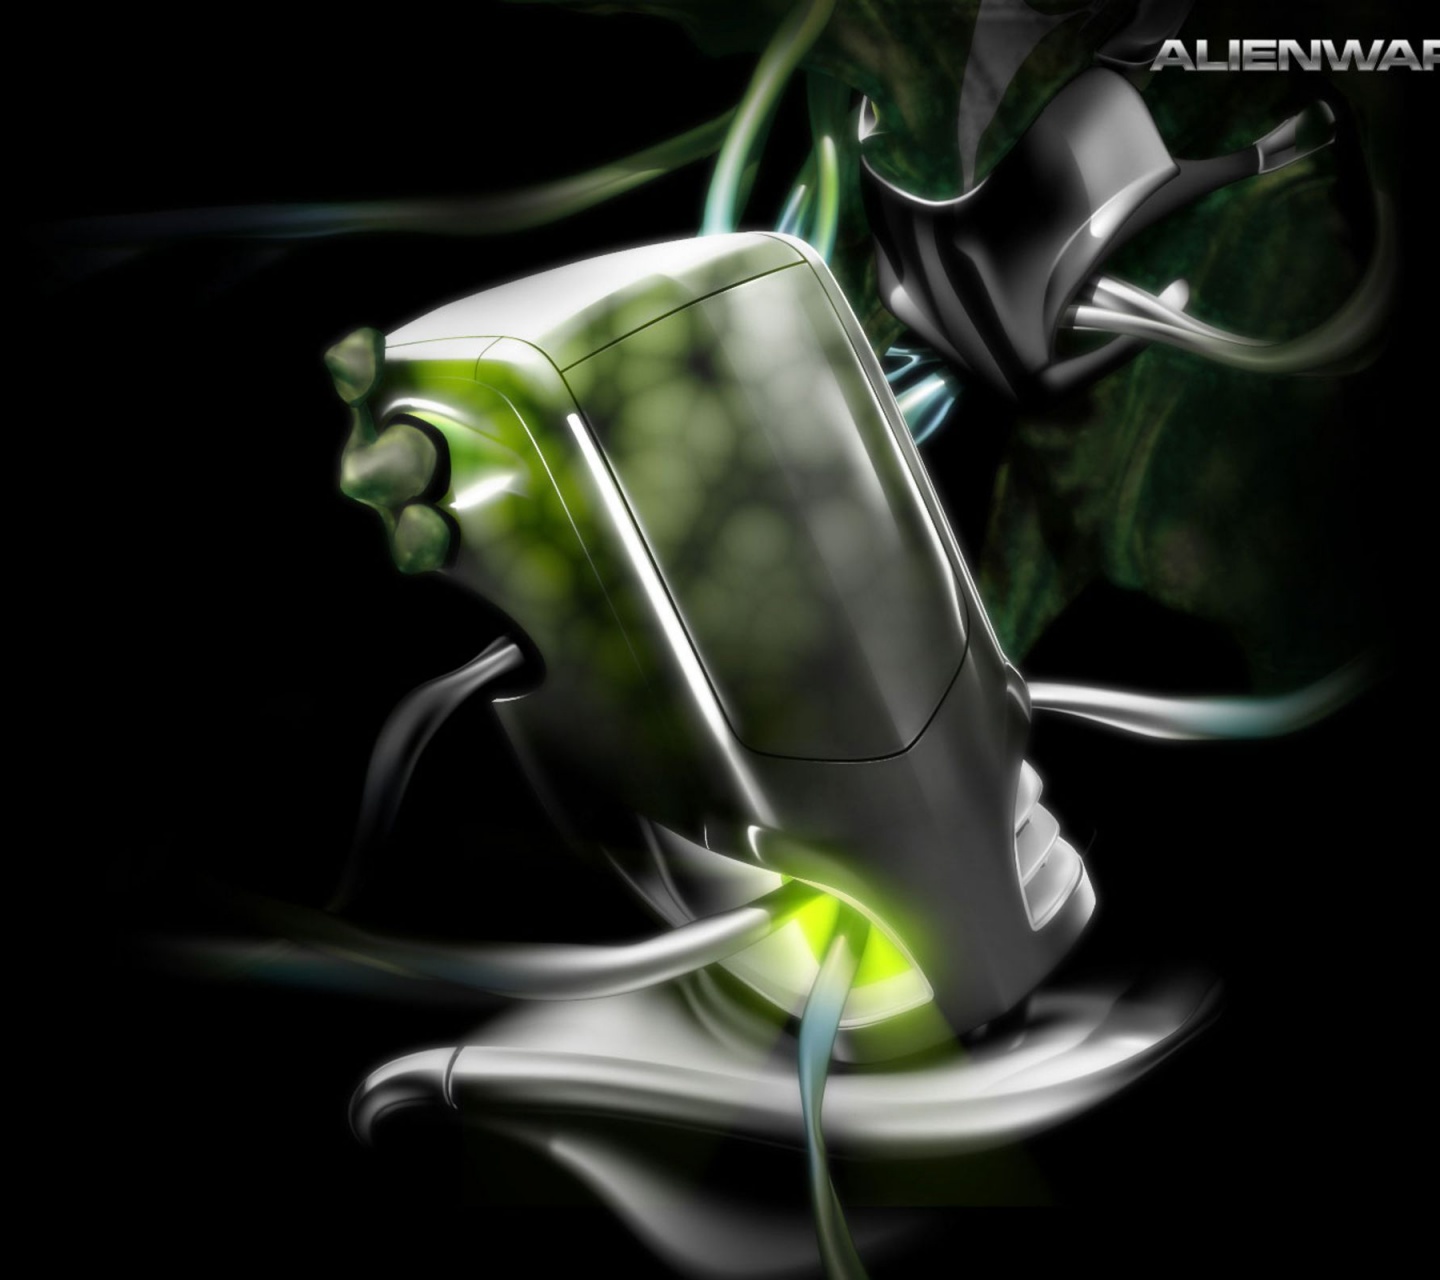 Alienware Brand 3D Computer